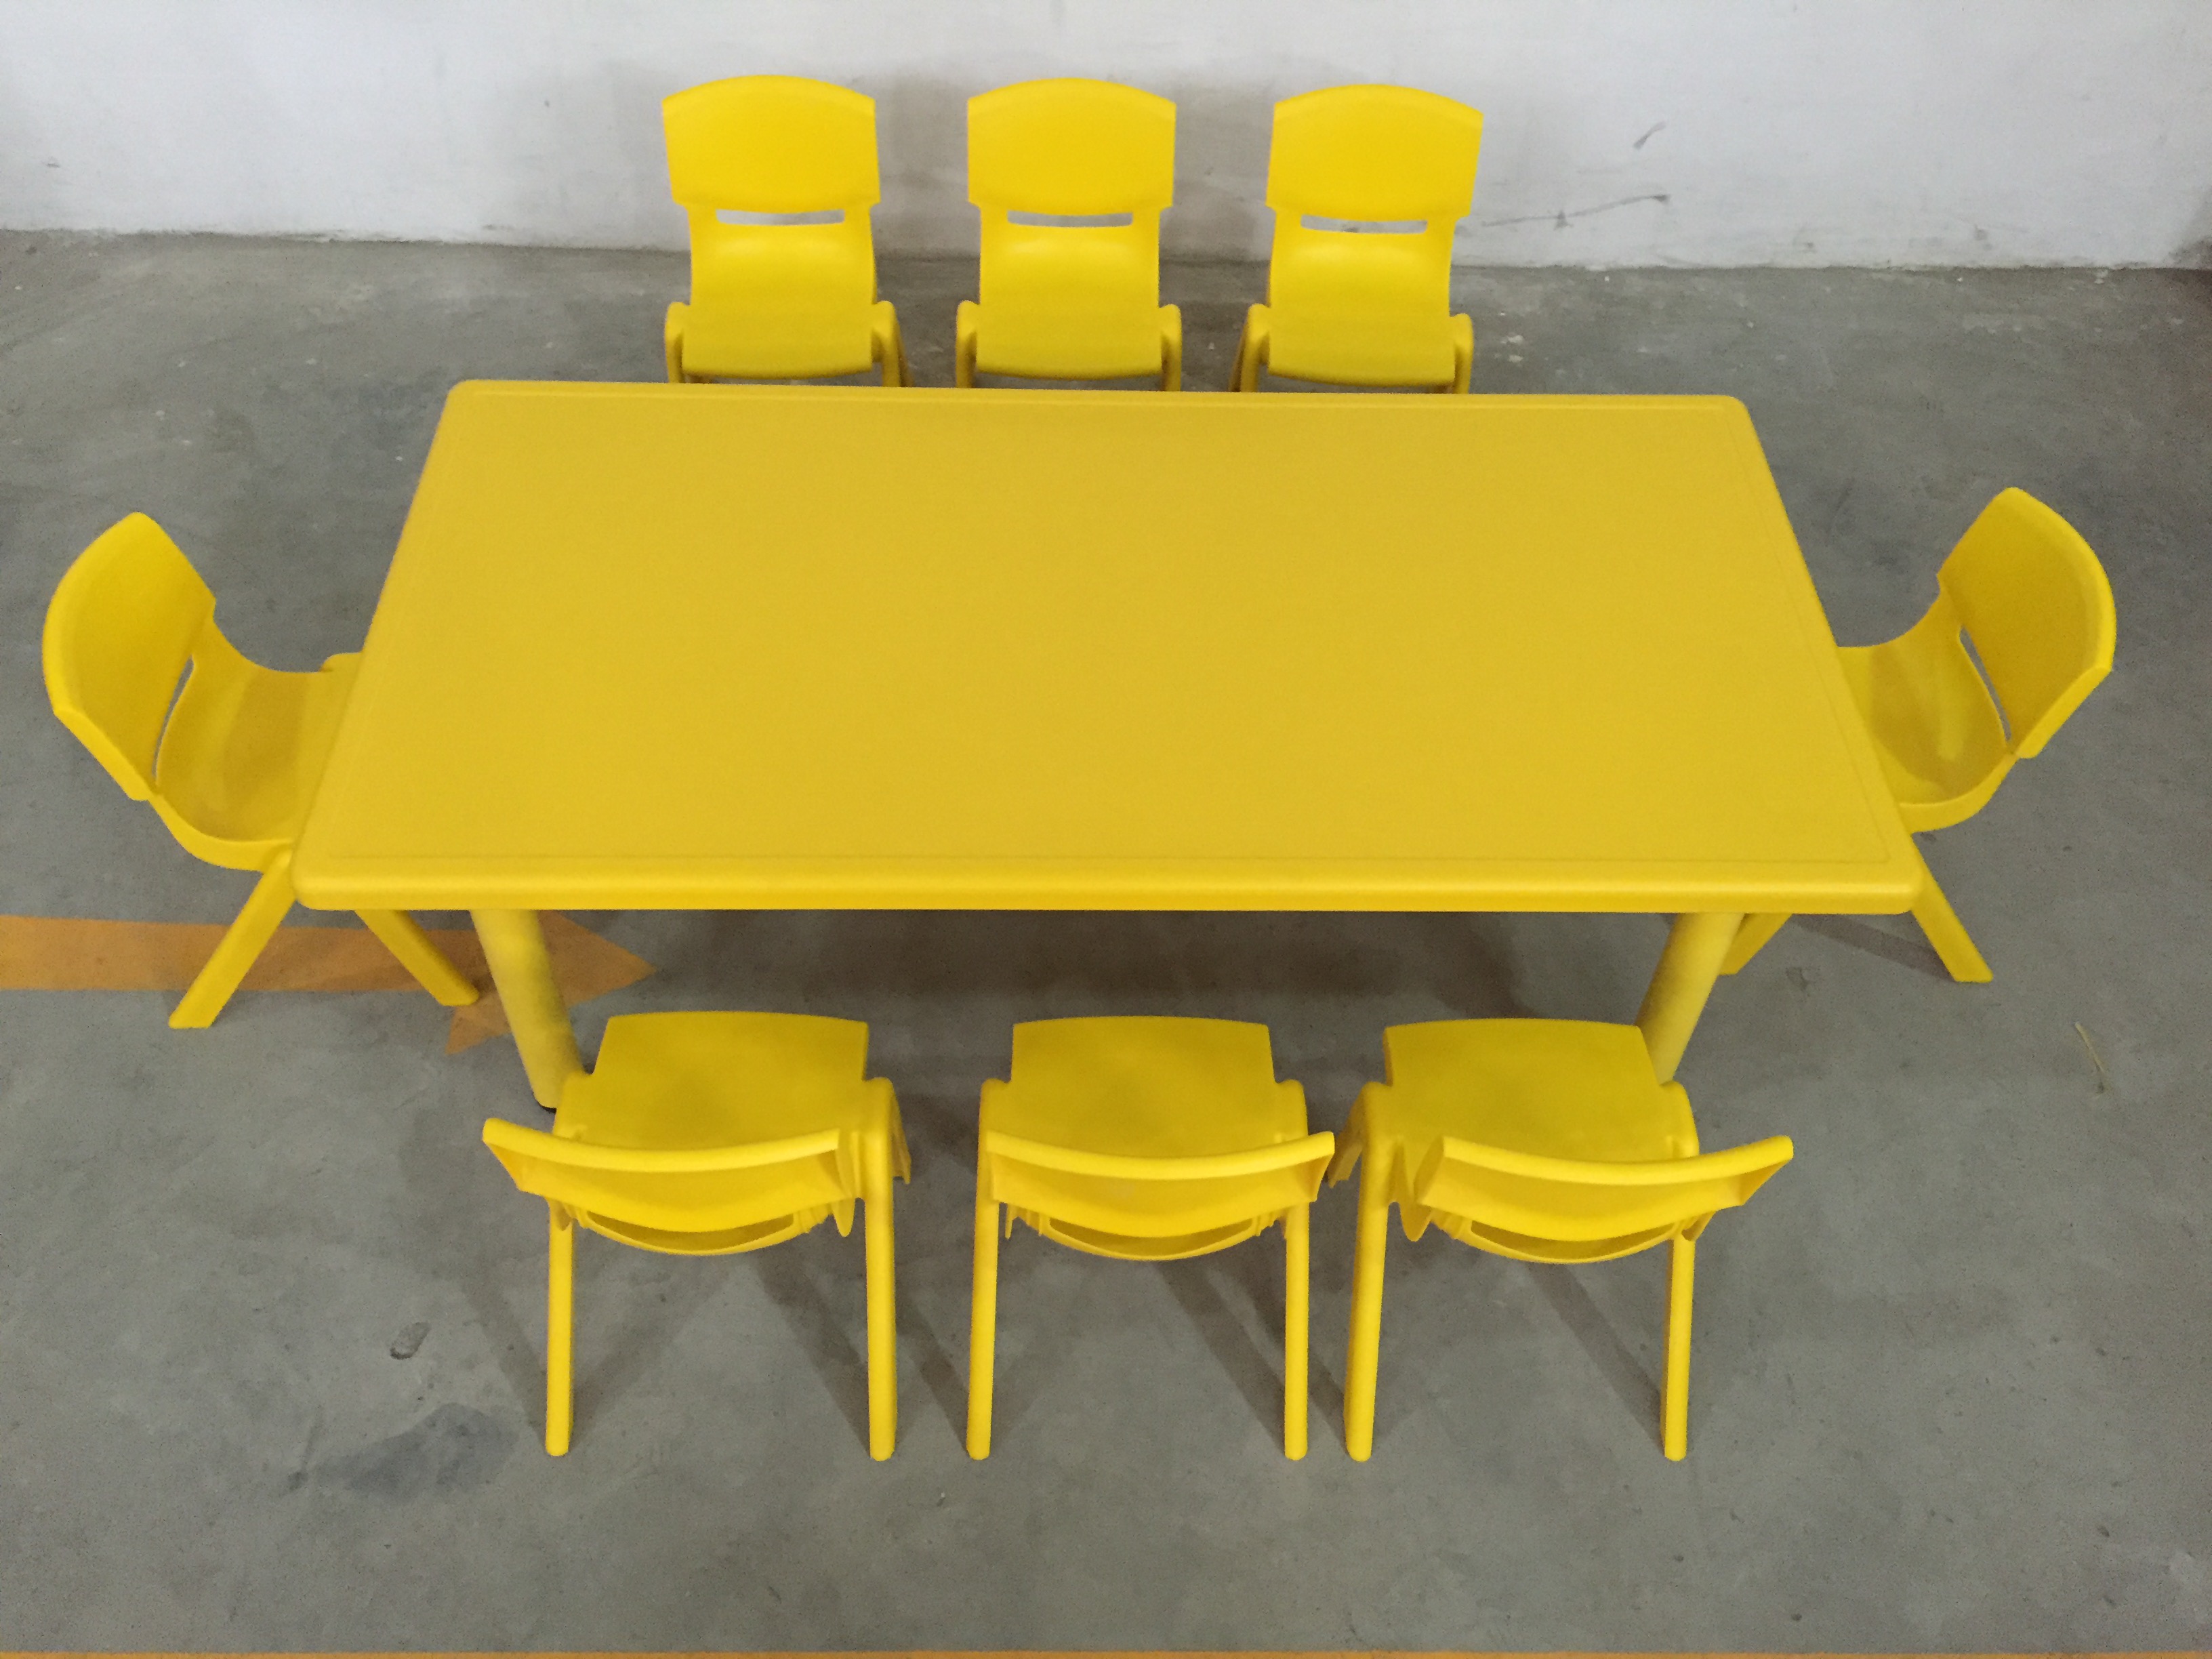 同贡幼儿园专用桌椅八人长方桌塑料桌椅儿童桌子塑料桌学习升降桌